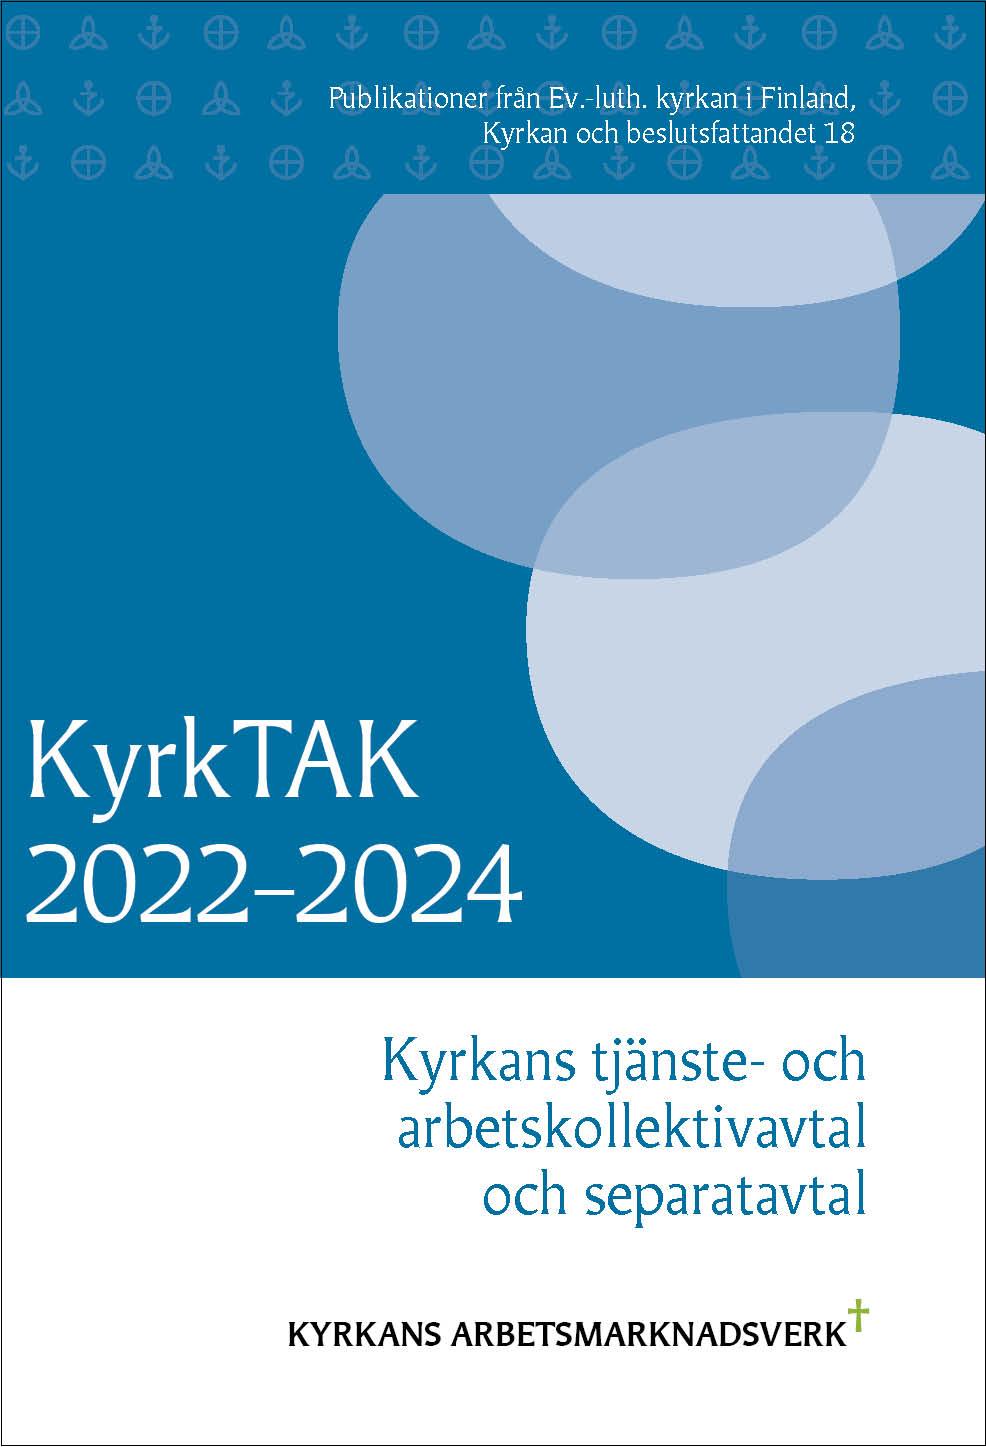 KyrkTAK 2022-2024, Kyrkans tjänste- och arbetskollektivavtal och separatavtal